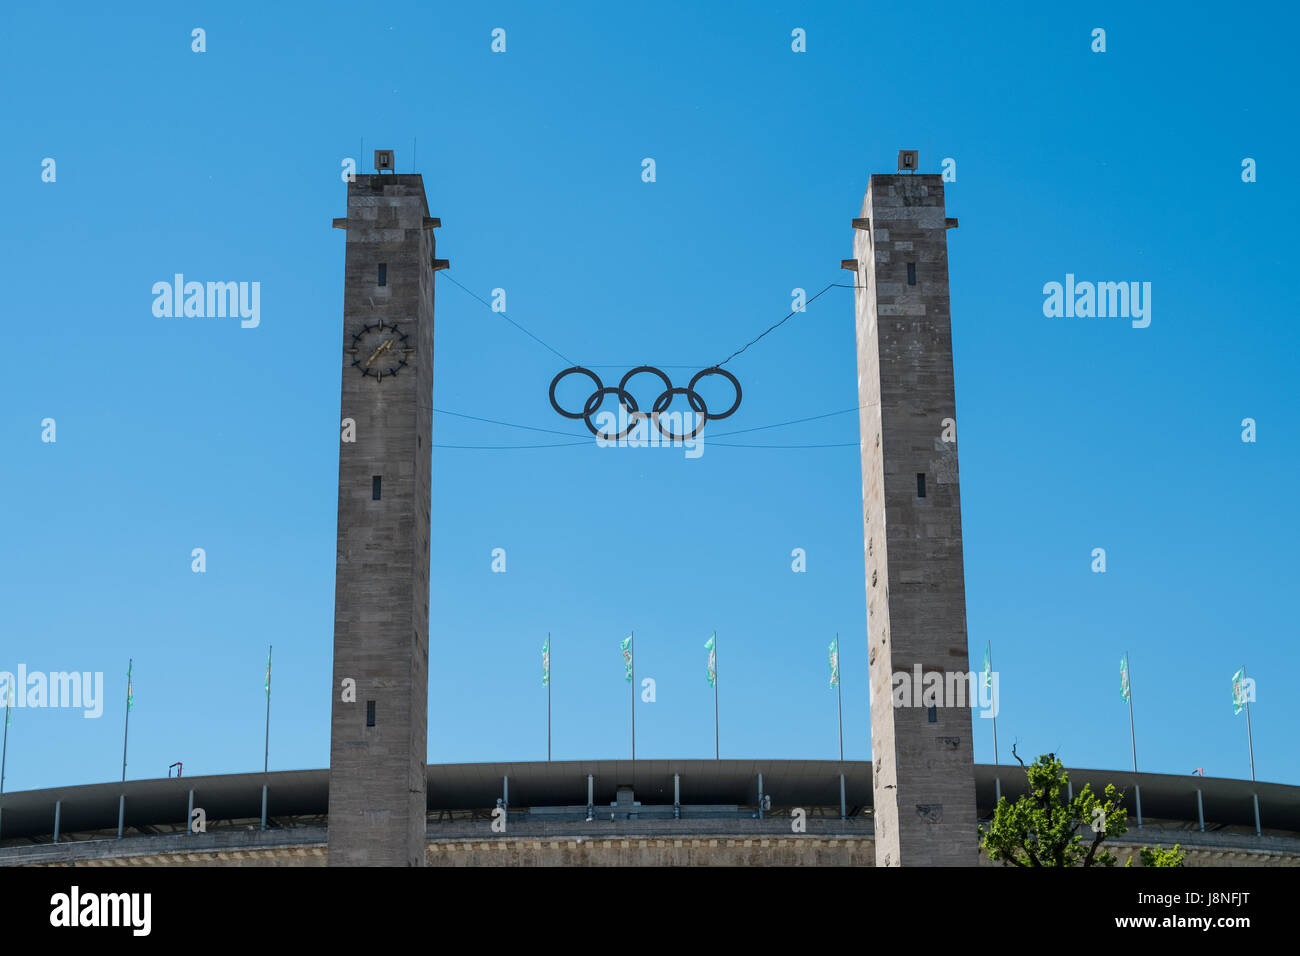 Berlin, Allemagne - le 27 mai 2017 : Les Anneaux olympiques à l'Olympiastadion (stade Olympique) à Berlin, Allemagne Banque D'Images